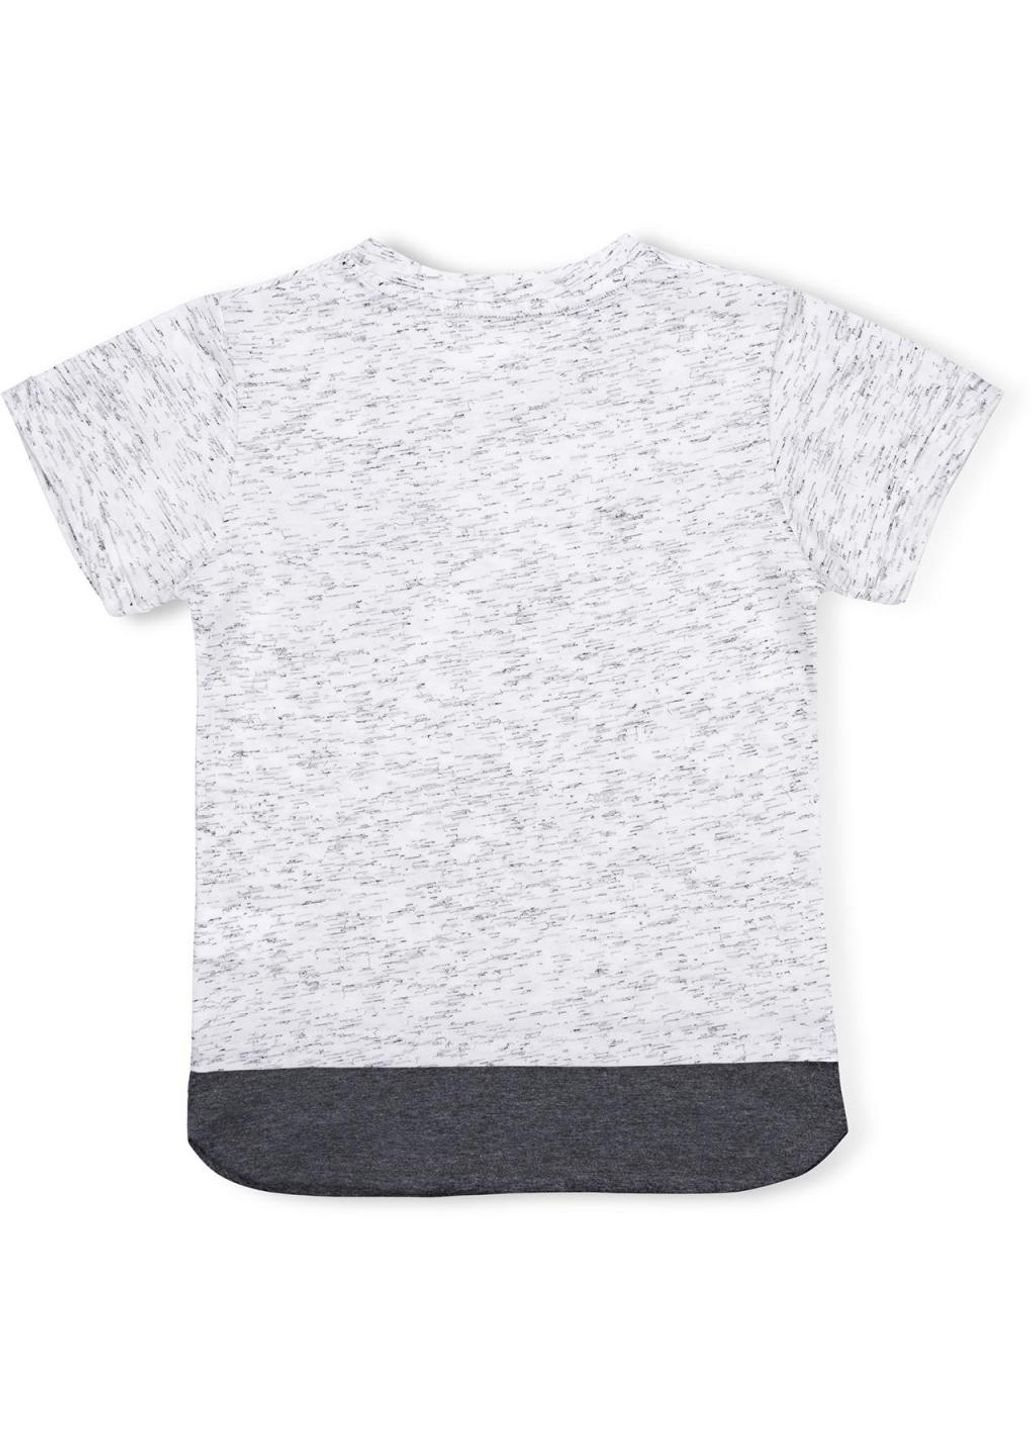 Серая демисезонная футболка детская с карманчиком (11075-128b-gray) Breeze